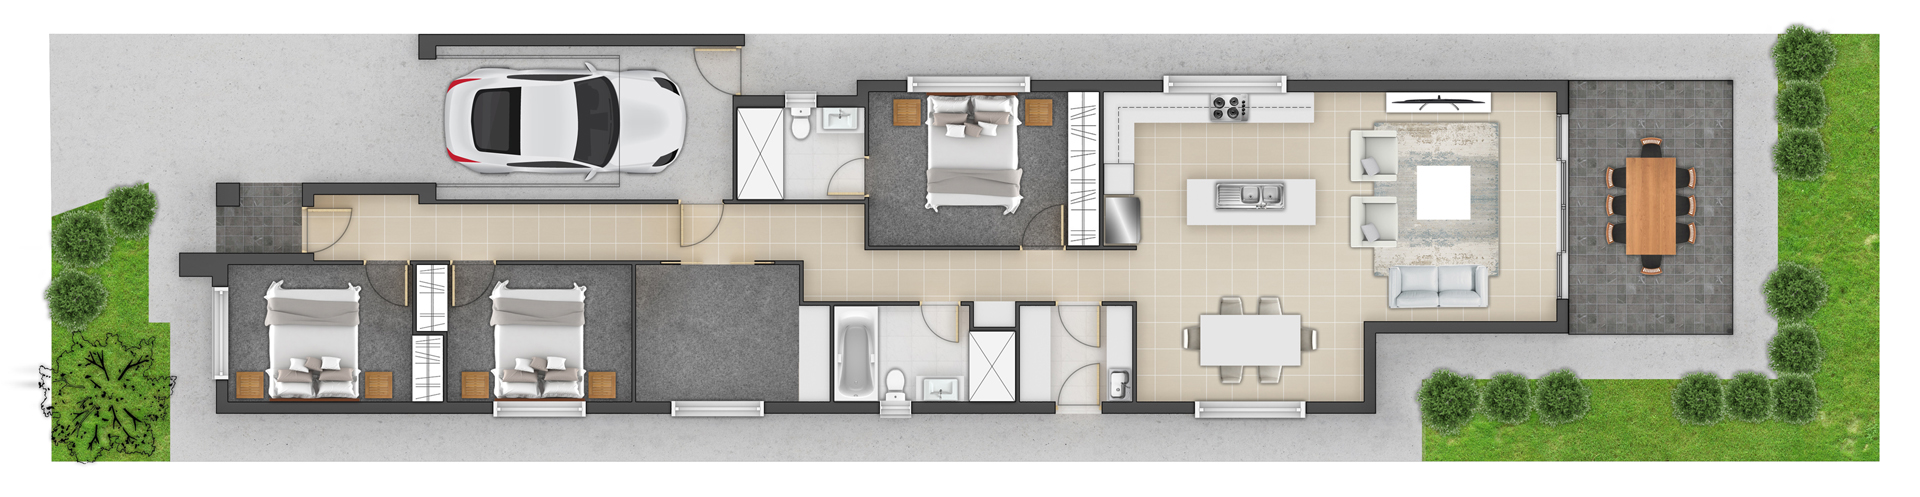 3d Floor Plan design Rendering